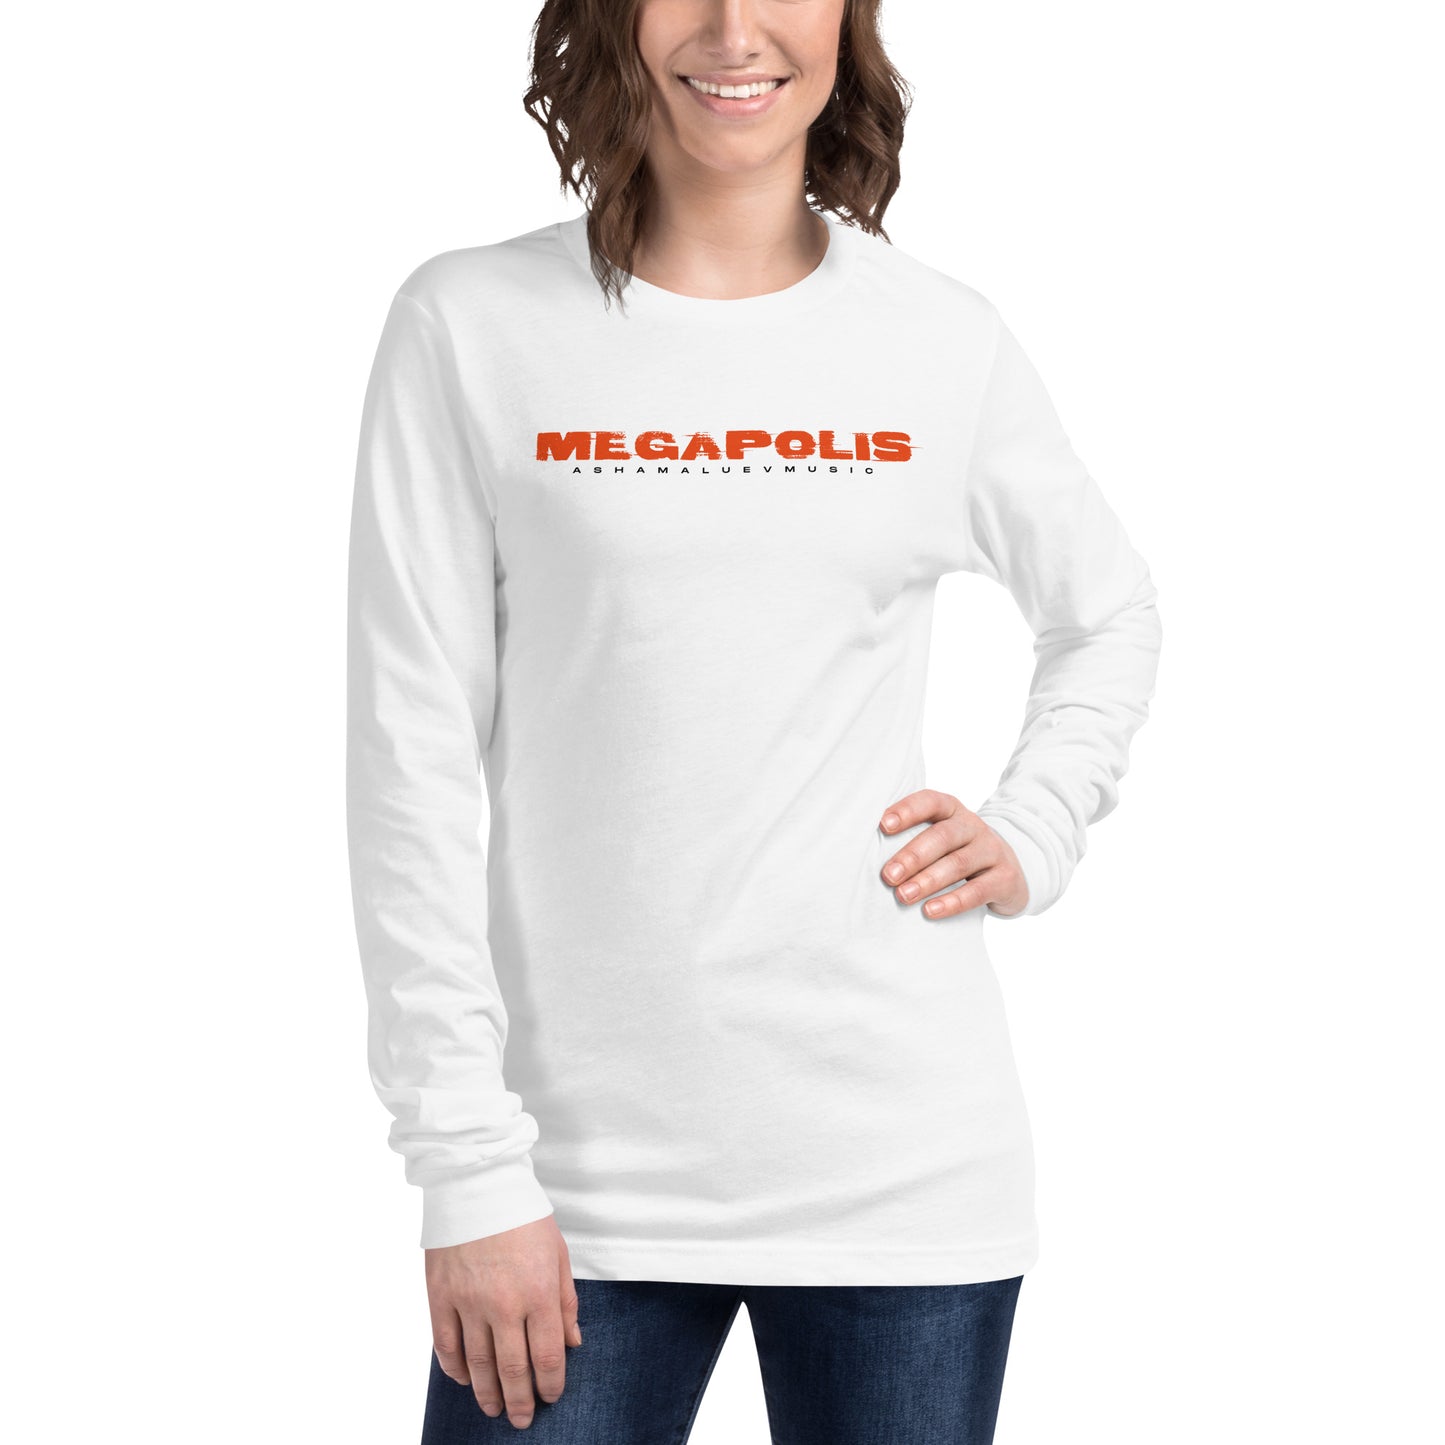 Long Sleeve T-Shirt "Megapolis" III